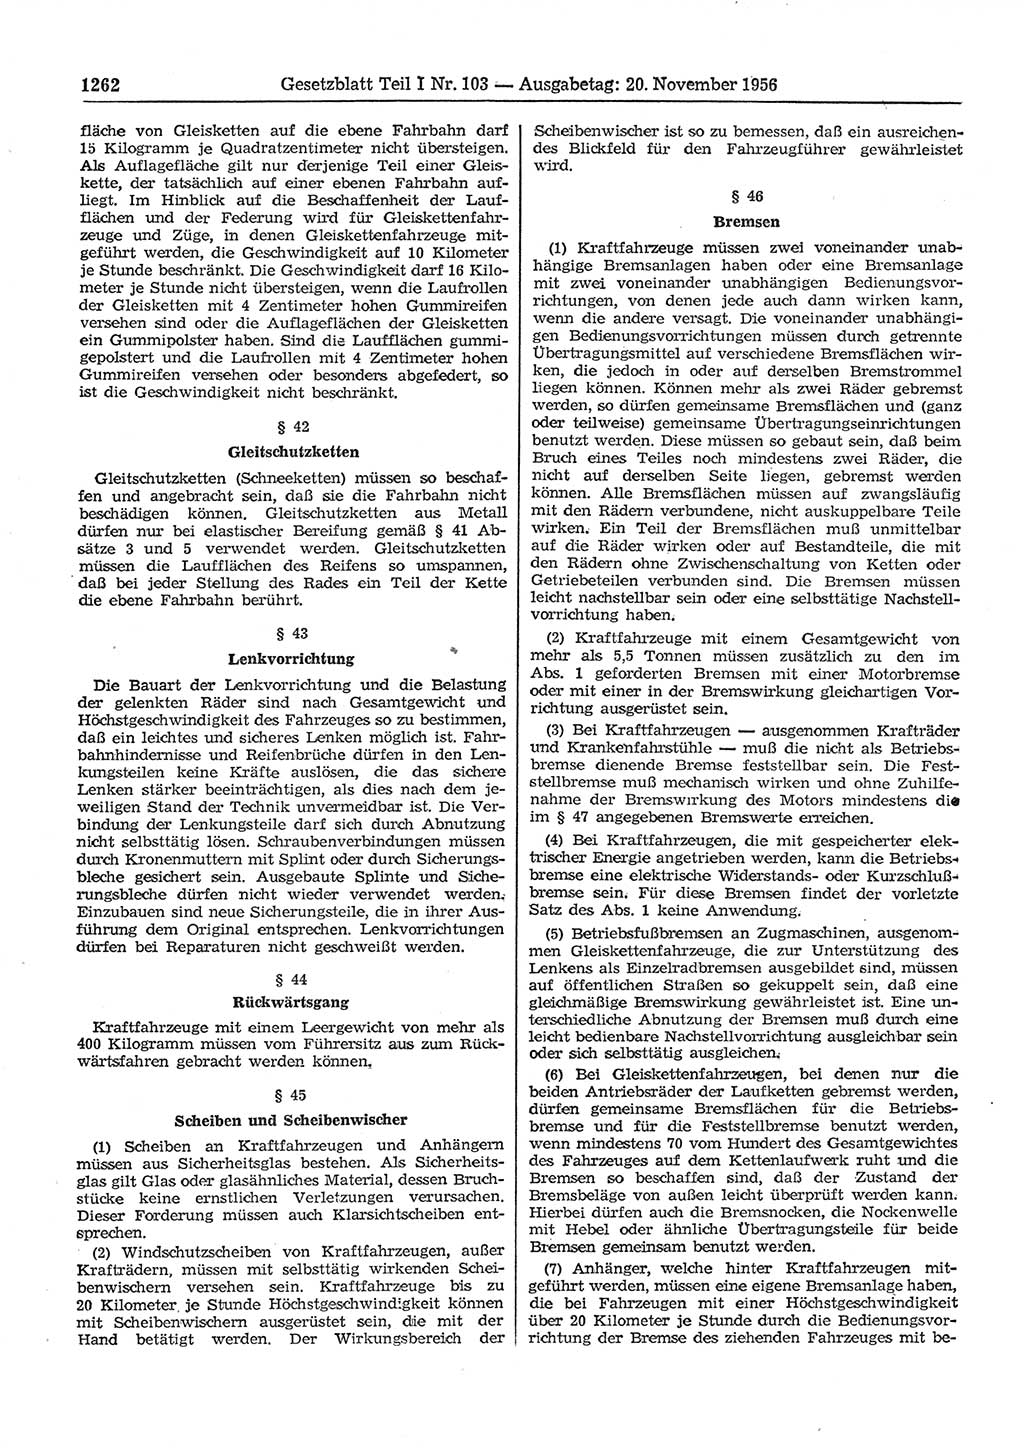 Gesetzblatt (GBl.) der Deutschen Demokratischen Republik (DDR) Teil Ⅰ 1956, Seite 1262 (GBl. DDR Ⅰ 1956, S. 1262)